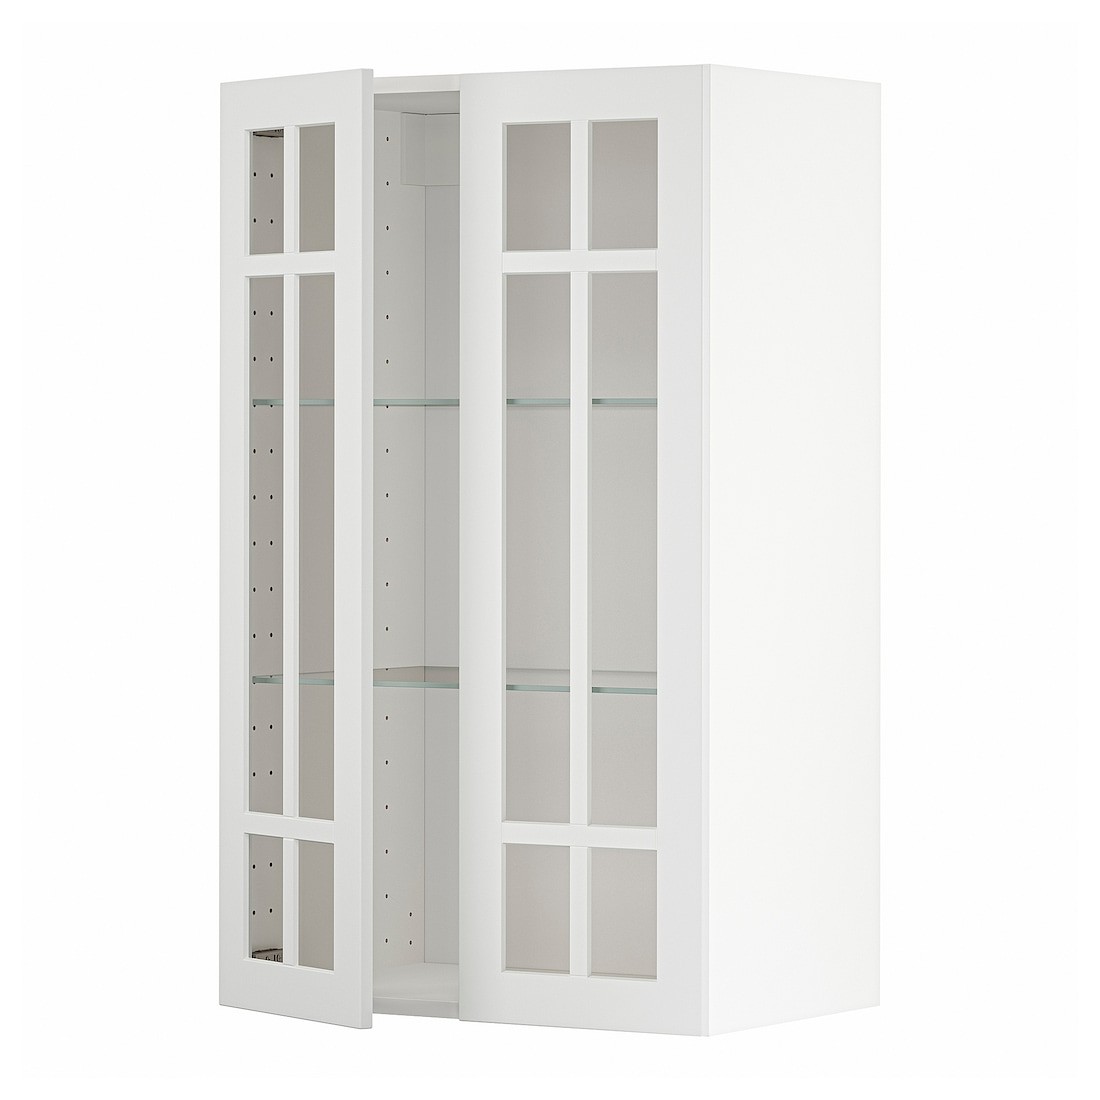 IKEA METOD МЕТОД Навісна шафа, білий / Stensund білий, 60x100 см 79454597 794.545.97